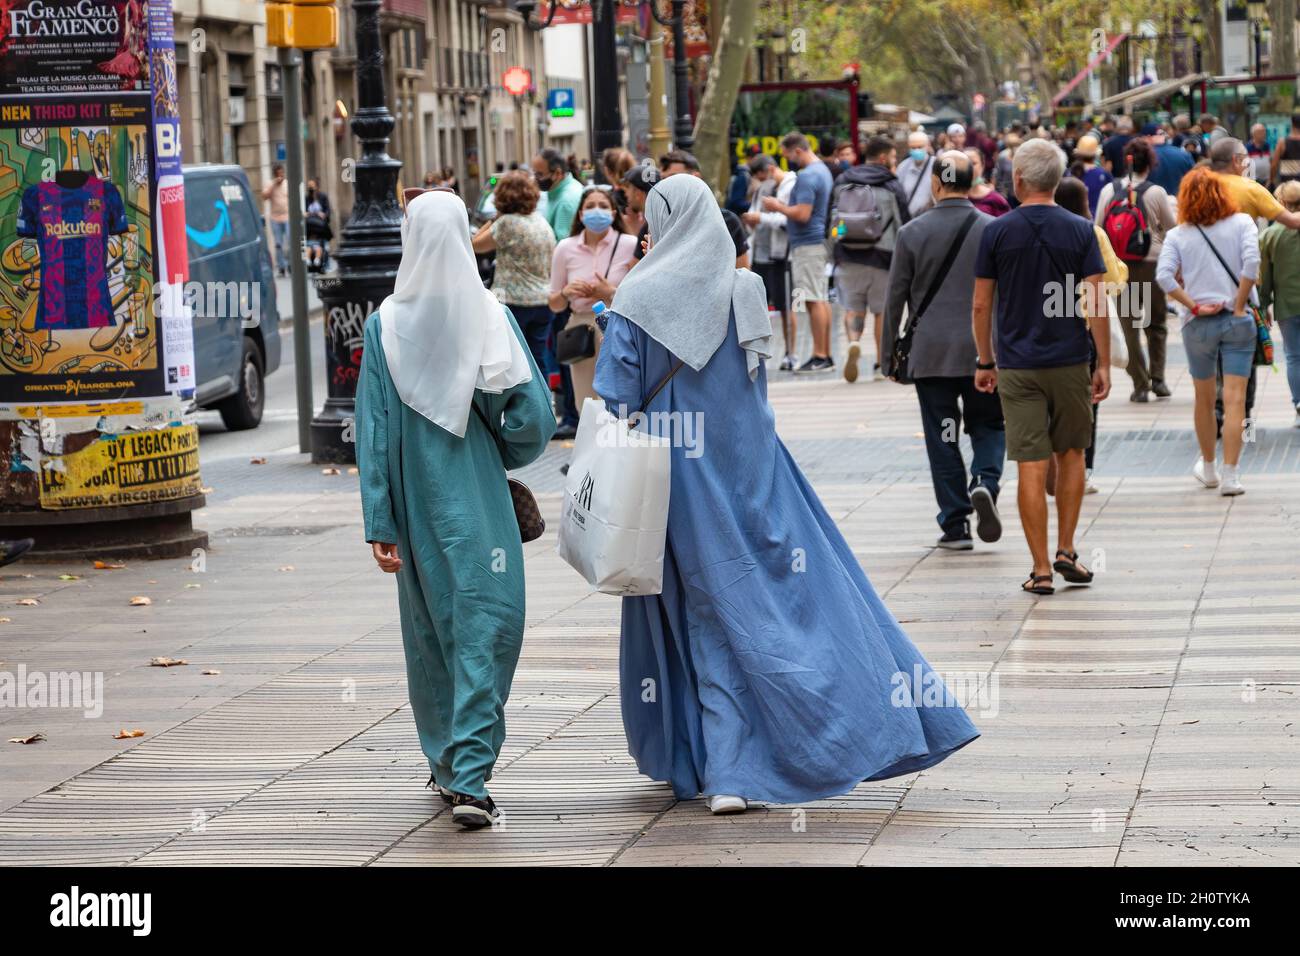 Barcelona, España - 19 de septiembre de 2021: Las mujeres musulmanas que visten ropa islámica tradicional, van compras Fotografía de stock Alamy